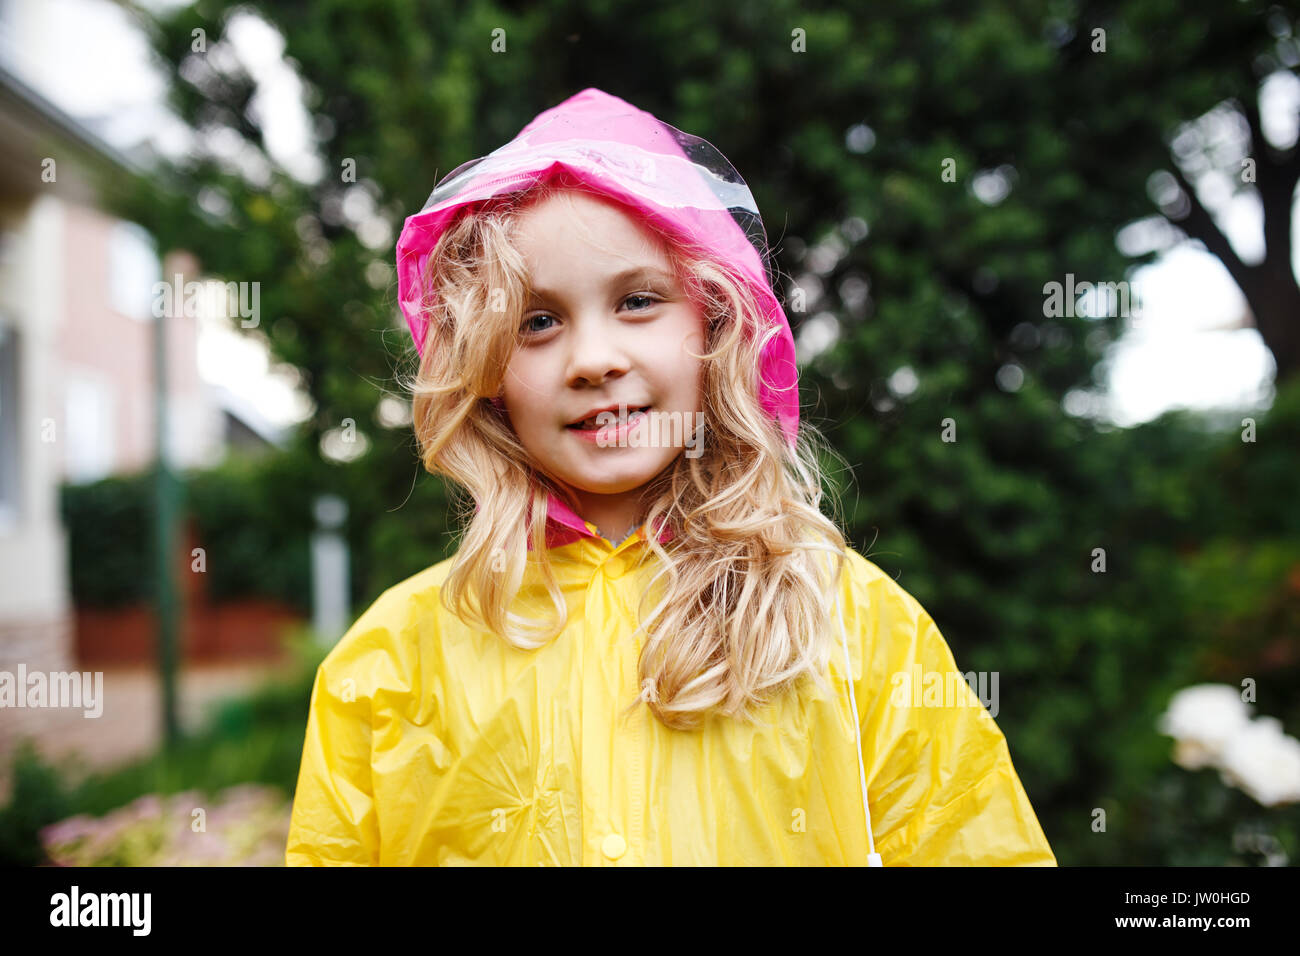 Glückliches Kind Mädchen im gelben Regenmantel. Stockfoto